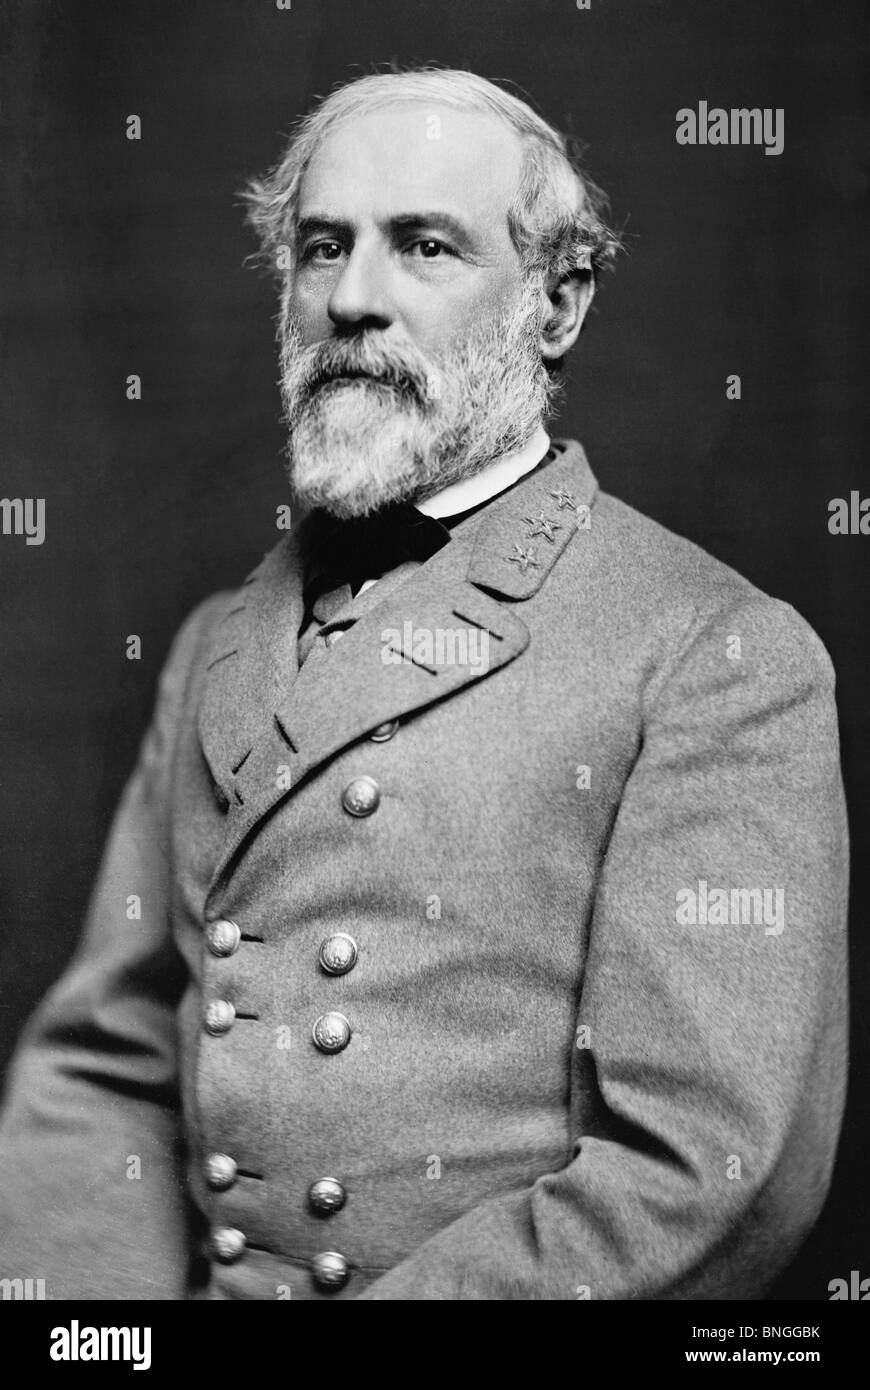 Portrait-Foto ca. 1864 General Robert E Lee (1807-1870) - Ikone konföderierte Befehlshaber im amerikanischen Bürgerkrieg. Stockfoto